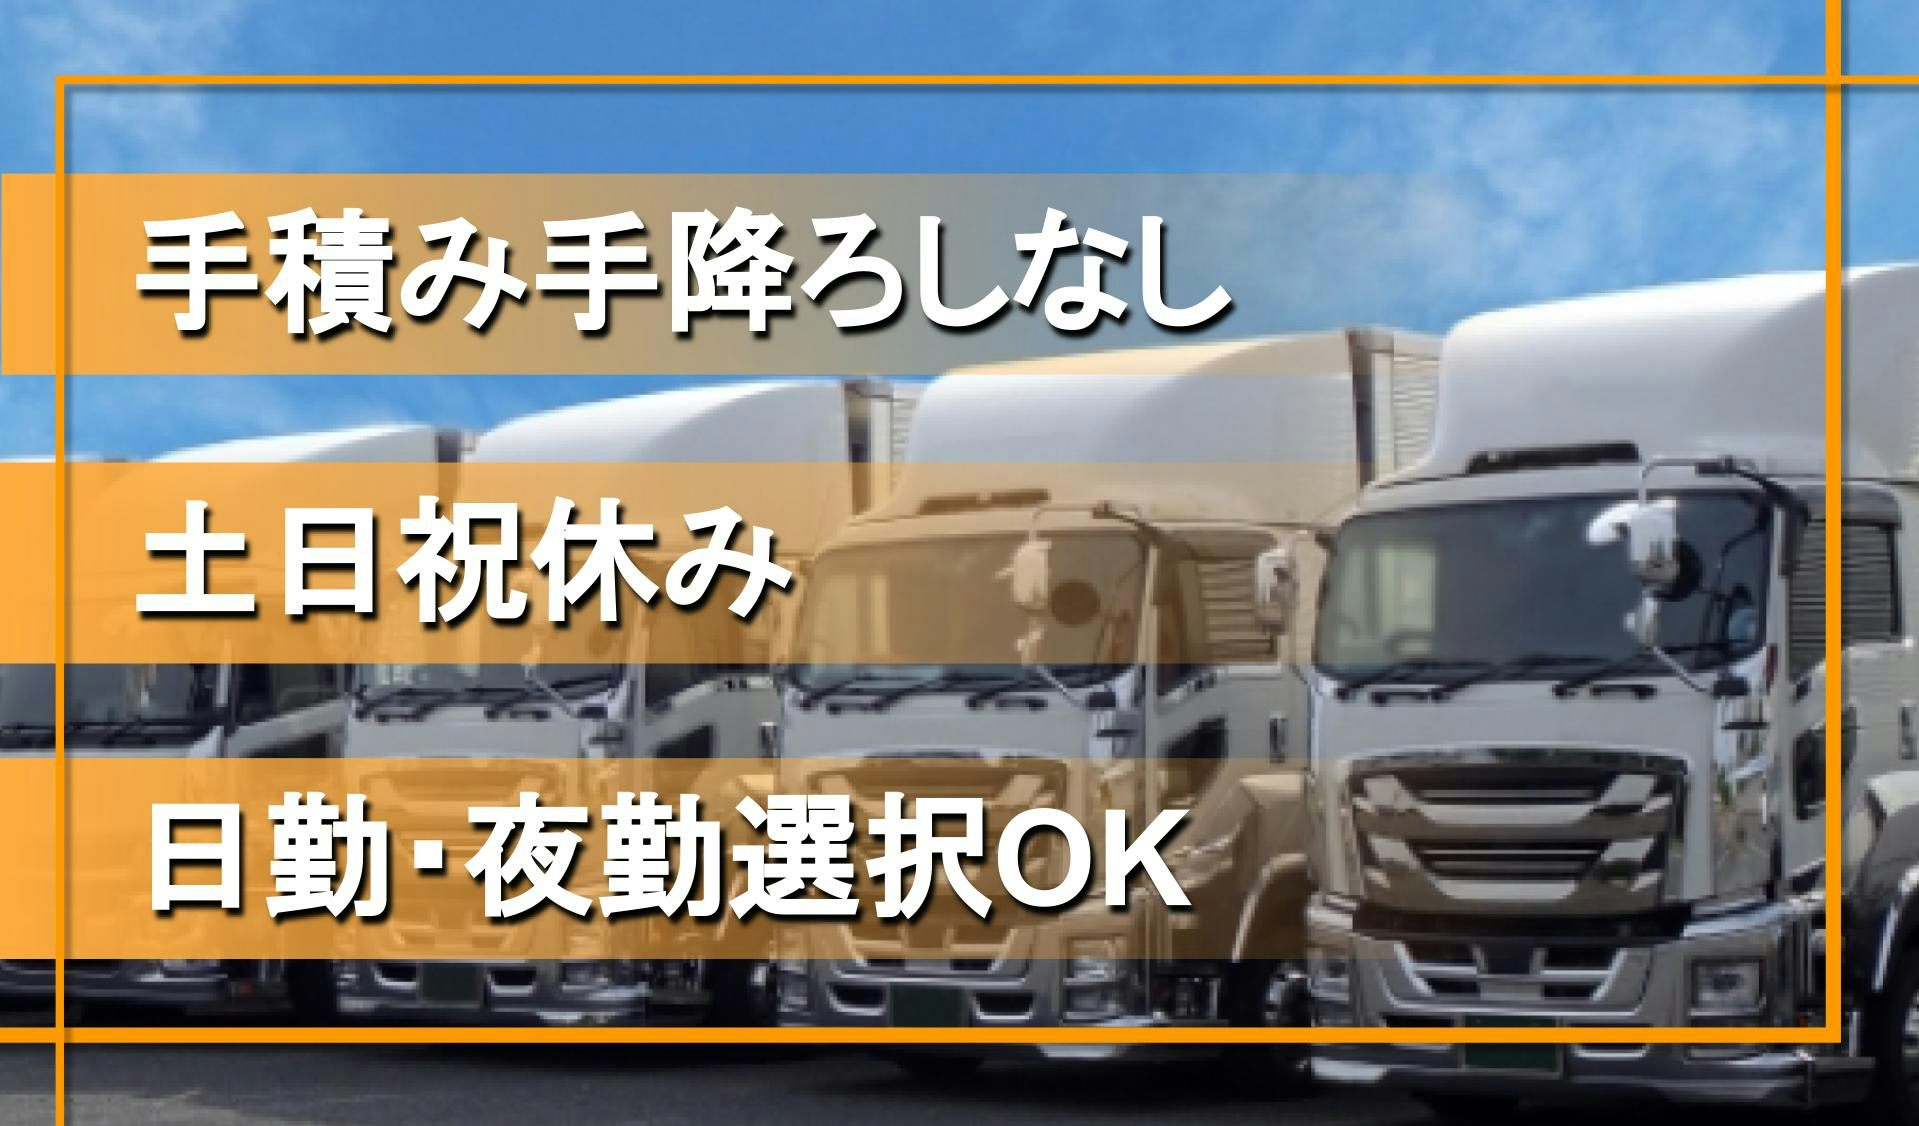 日本運輸 株式会社の画像